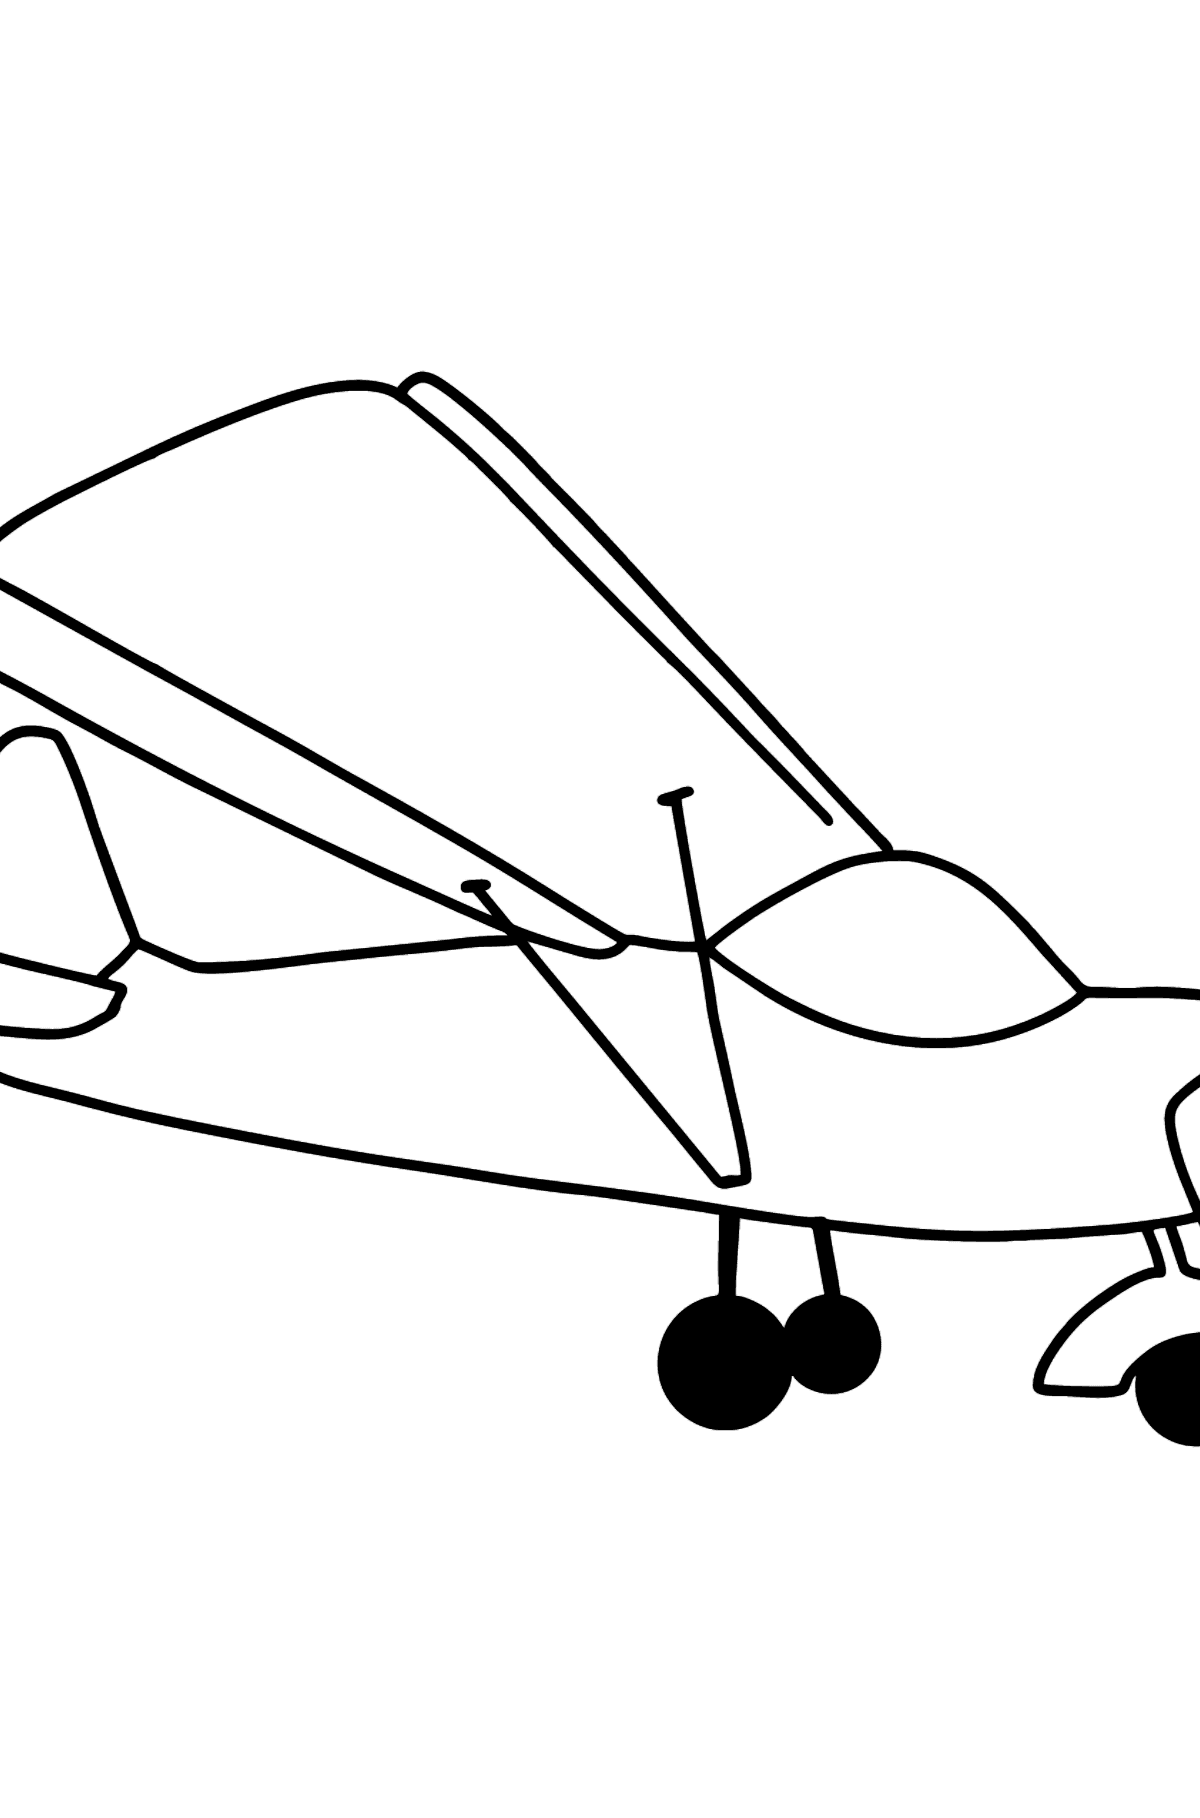 Desenho para colorir de avião pequeno - Imagens para Colorir para Crianças